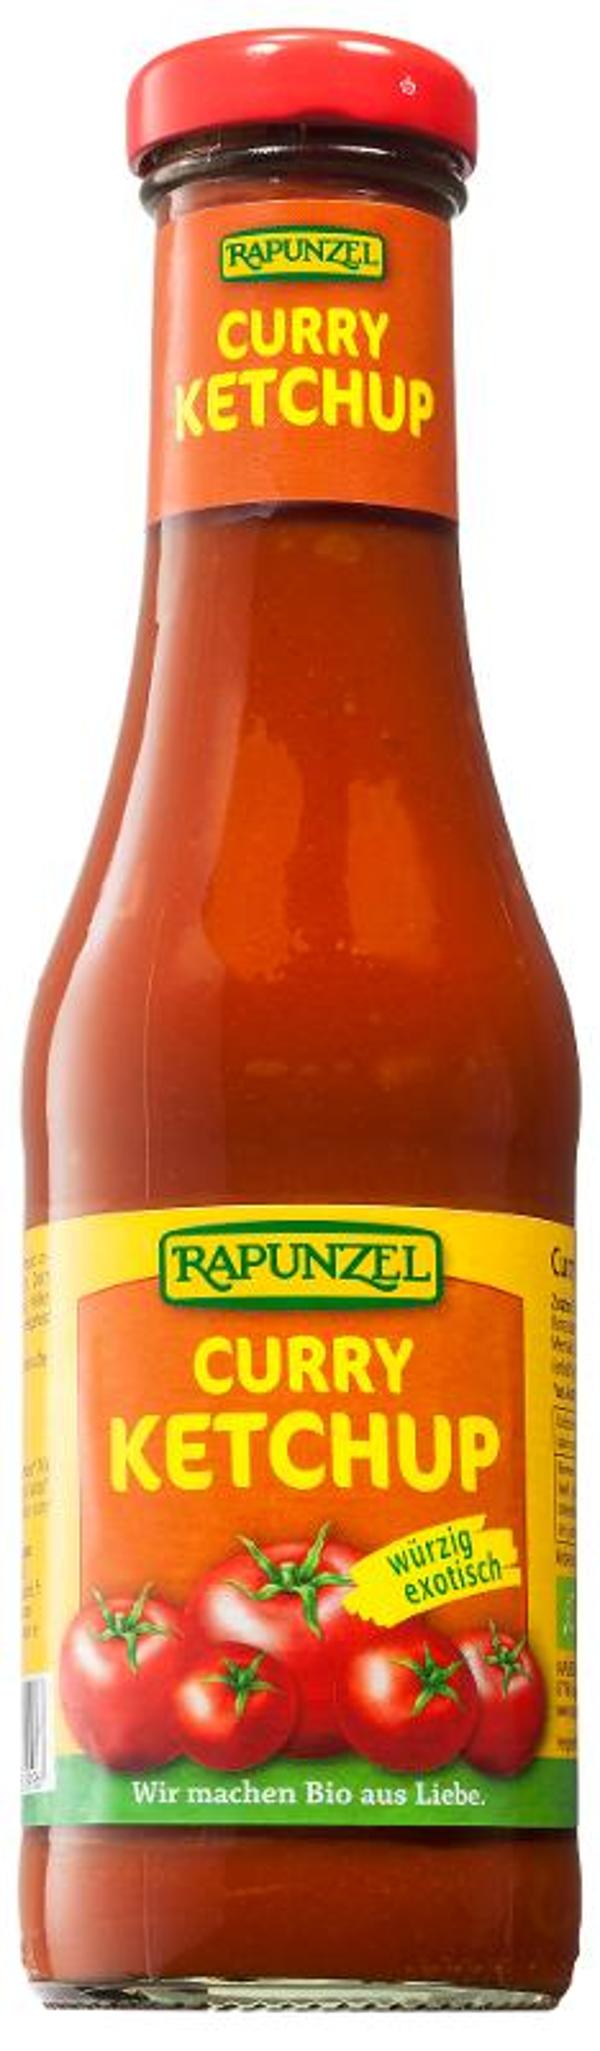 Produktfoto zu Ketchup Curry